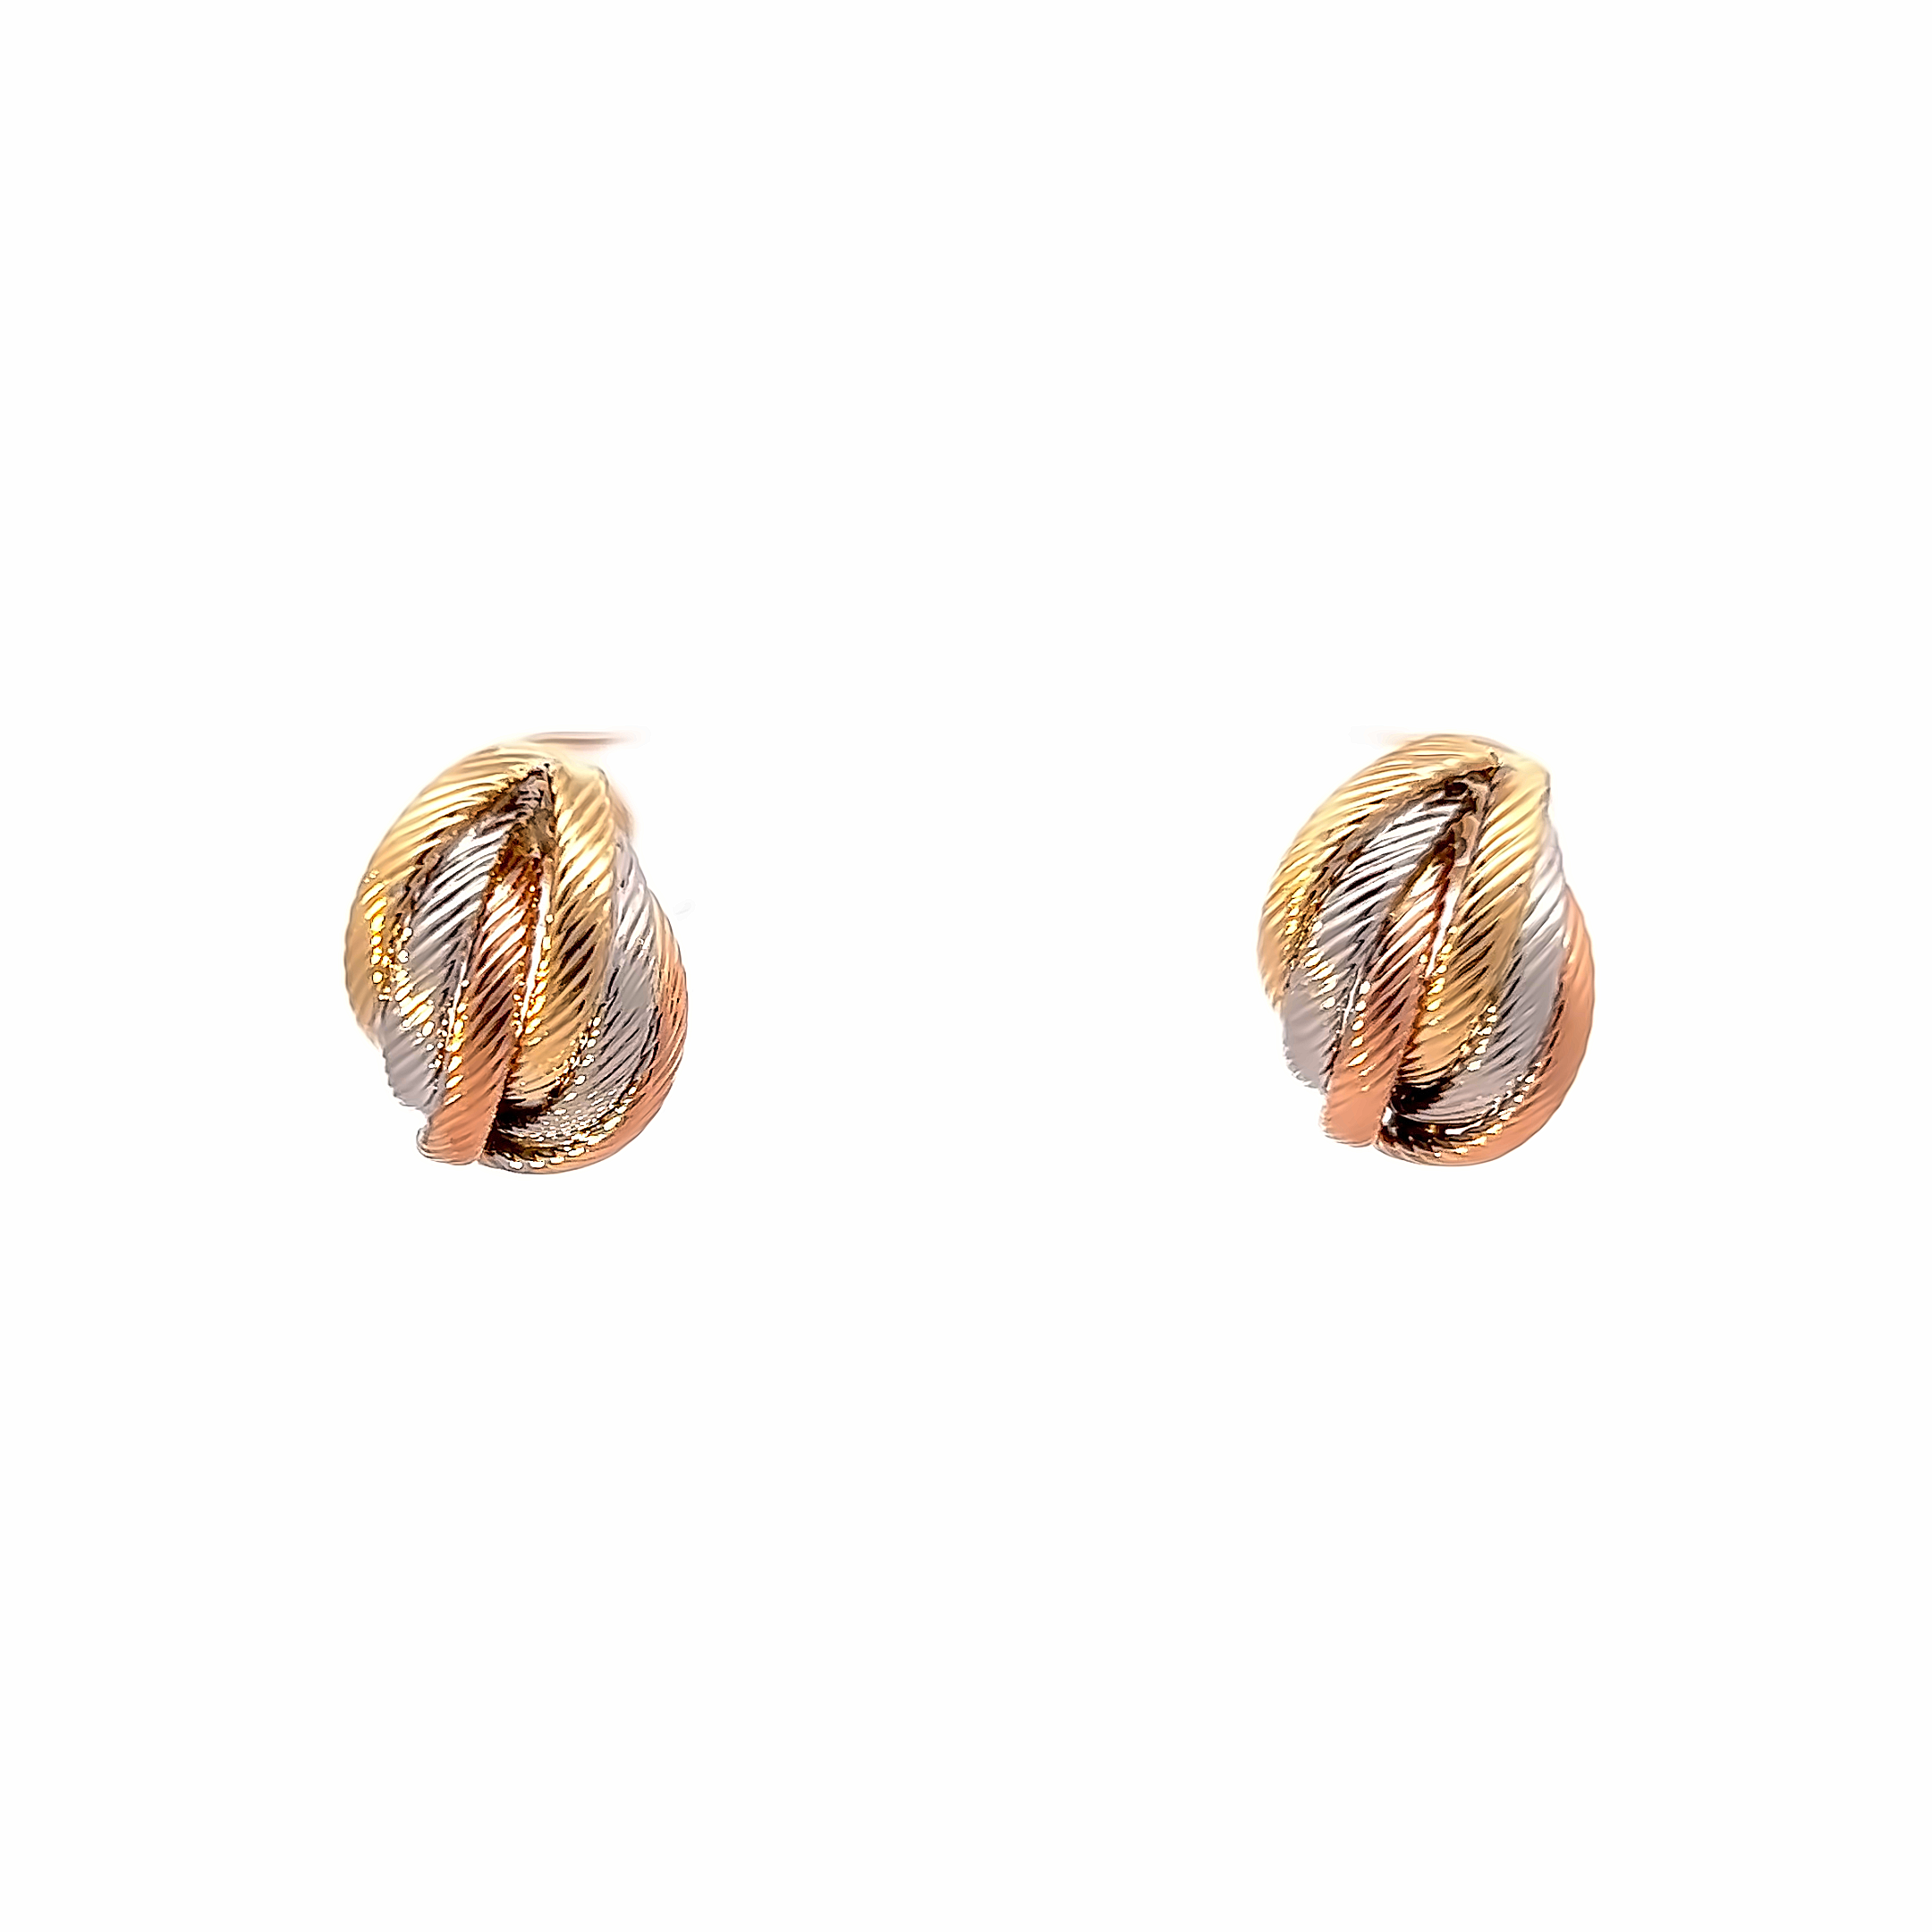 Ladies 14 karat tri-colored earrings  with screw backs.